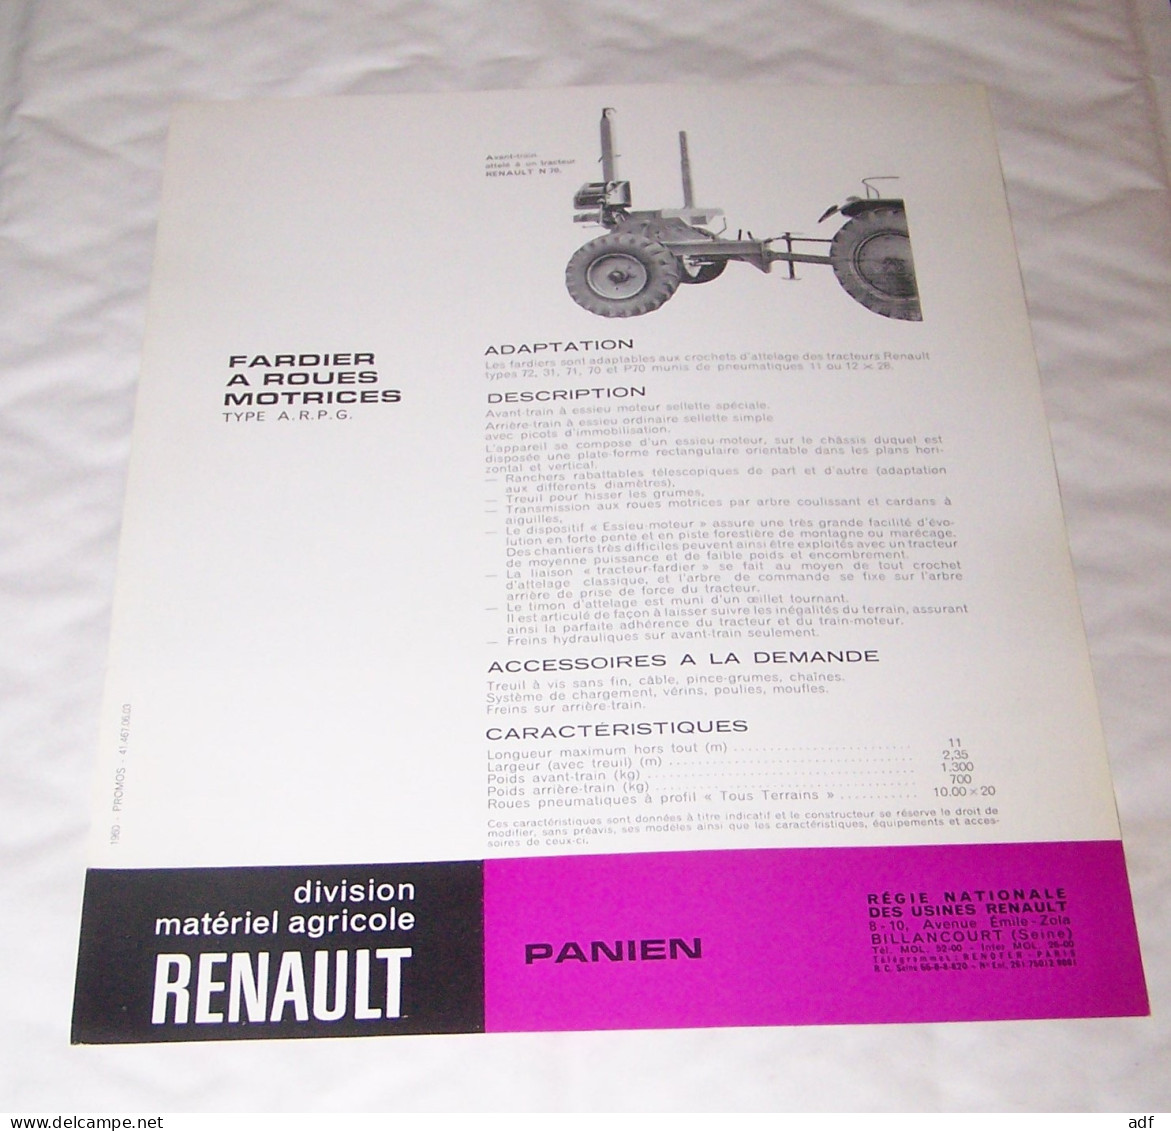 FEUILLET PUB PUBLICITAIRE MATERIEL RENAULT FARDIER A ROUES MOTRICES PANIEN ( TRACTEUR, TRACTEURS, MOTOCULTURE ) - Tractors